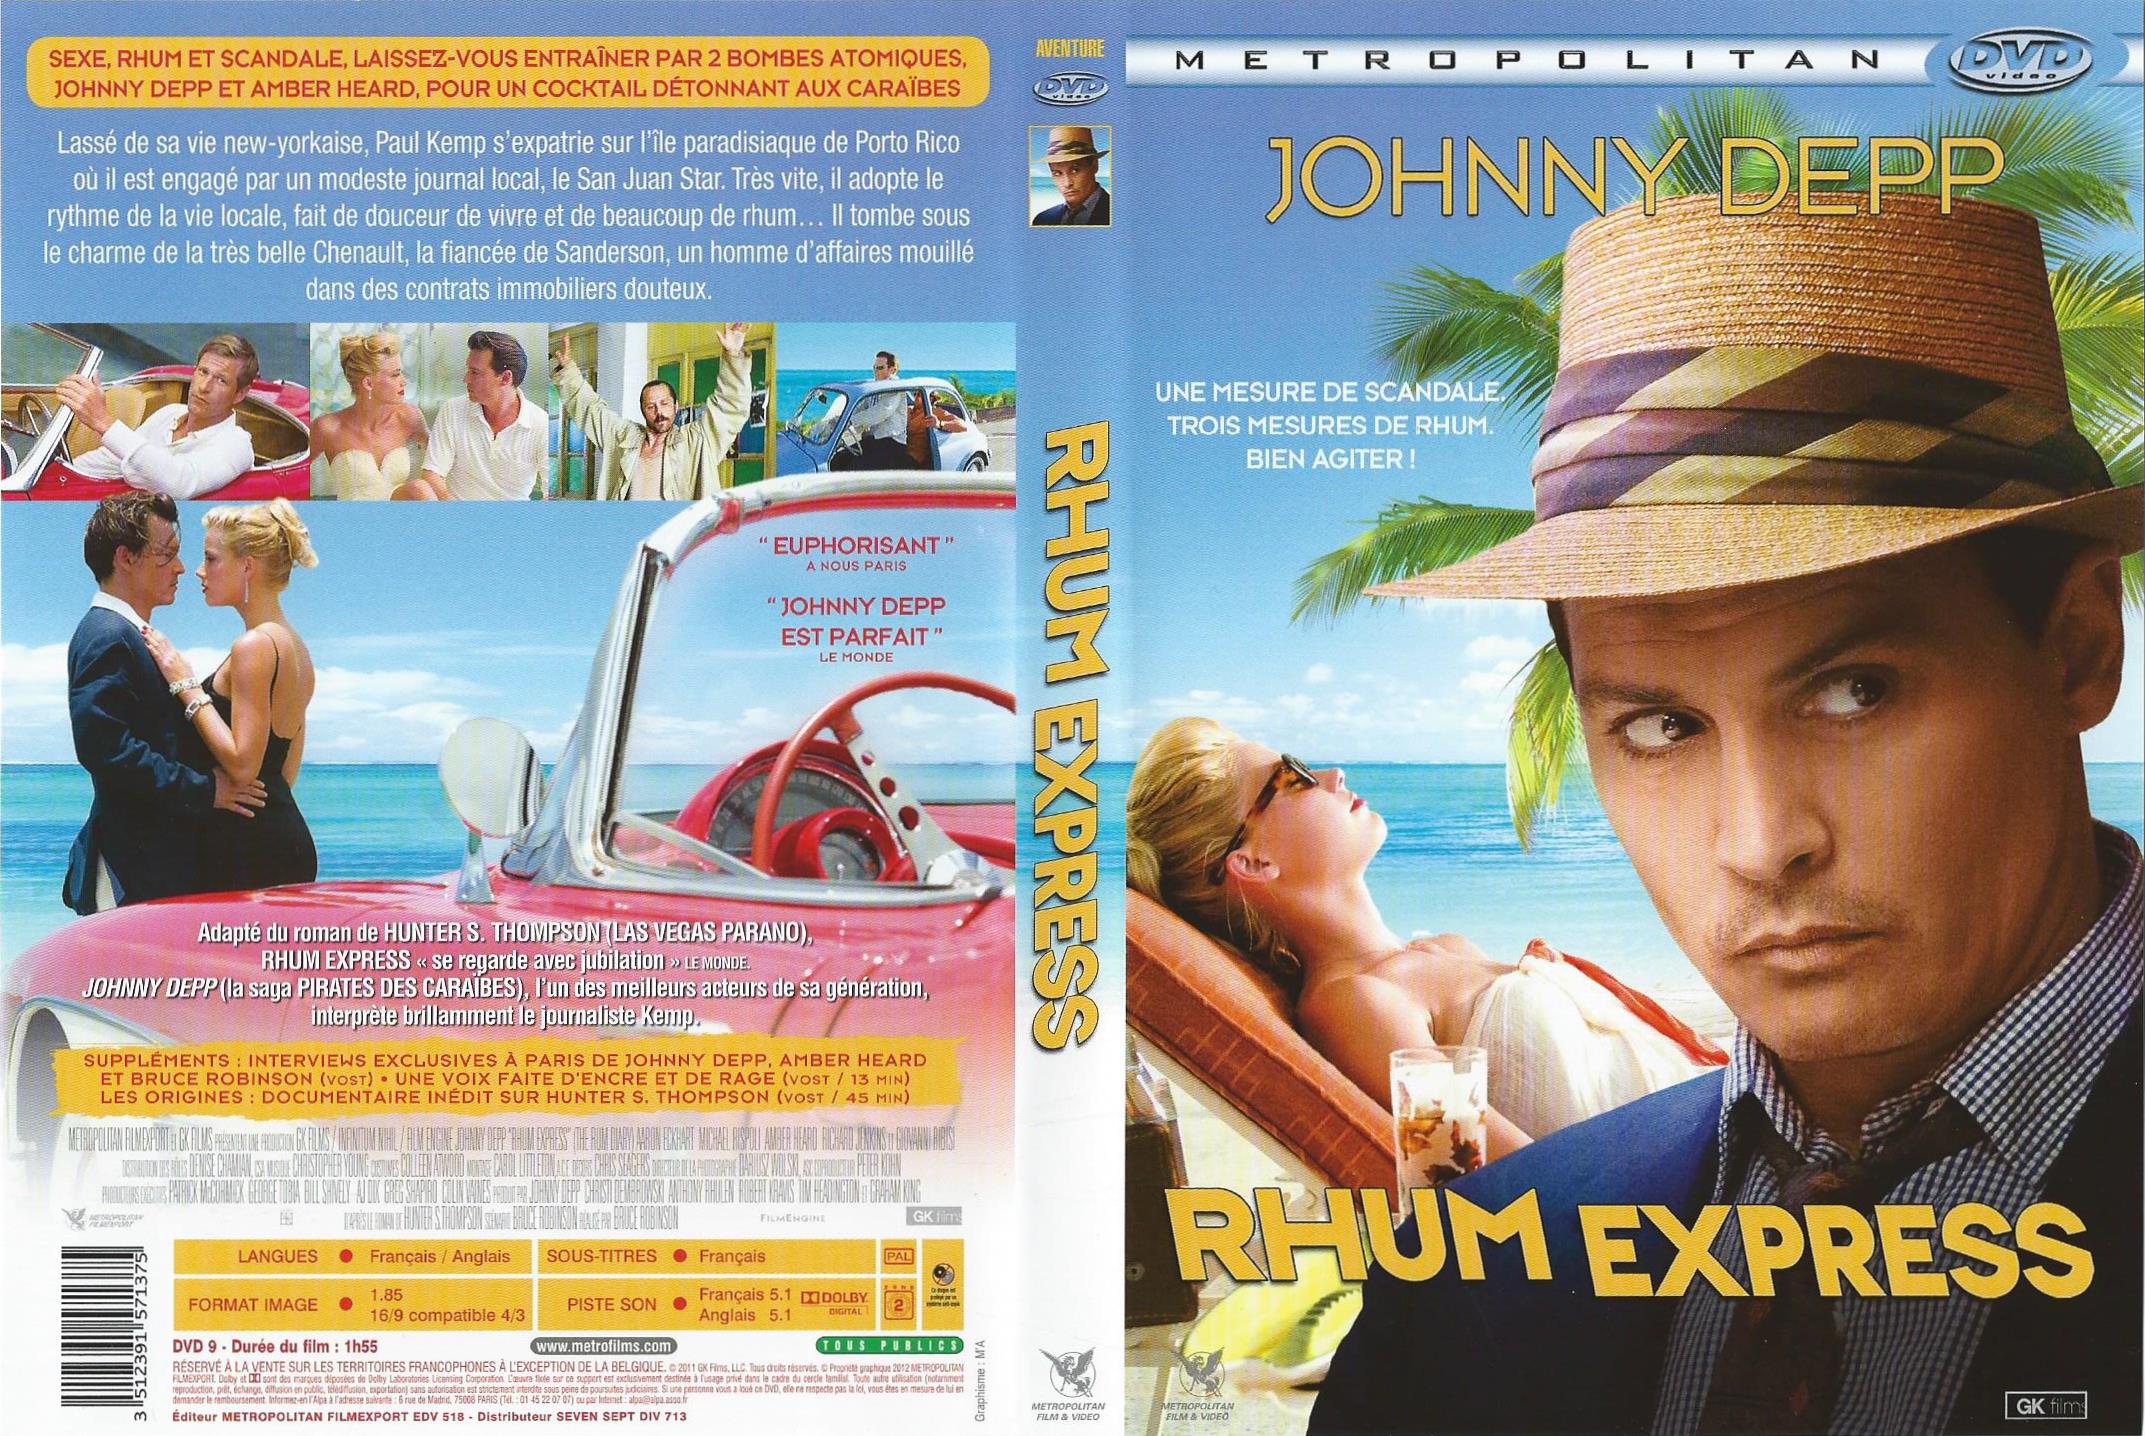 Jaquette DVD Rhum express